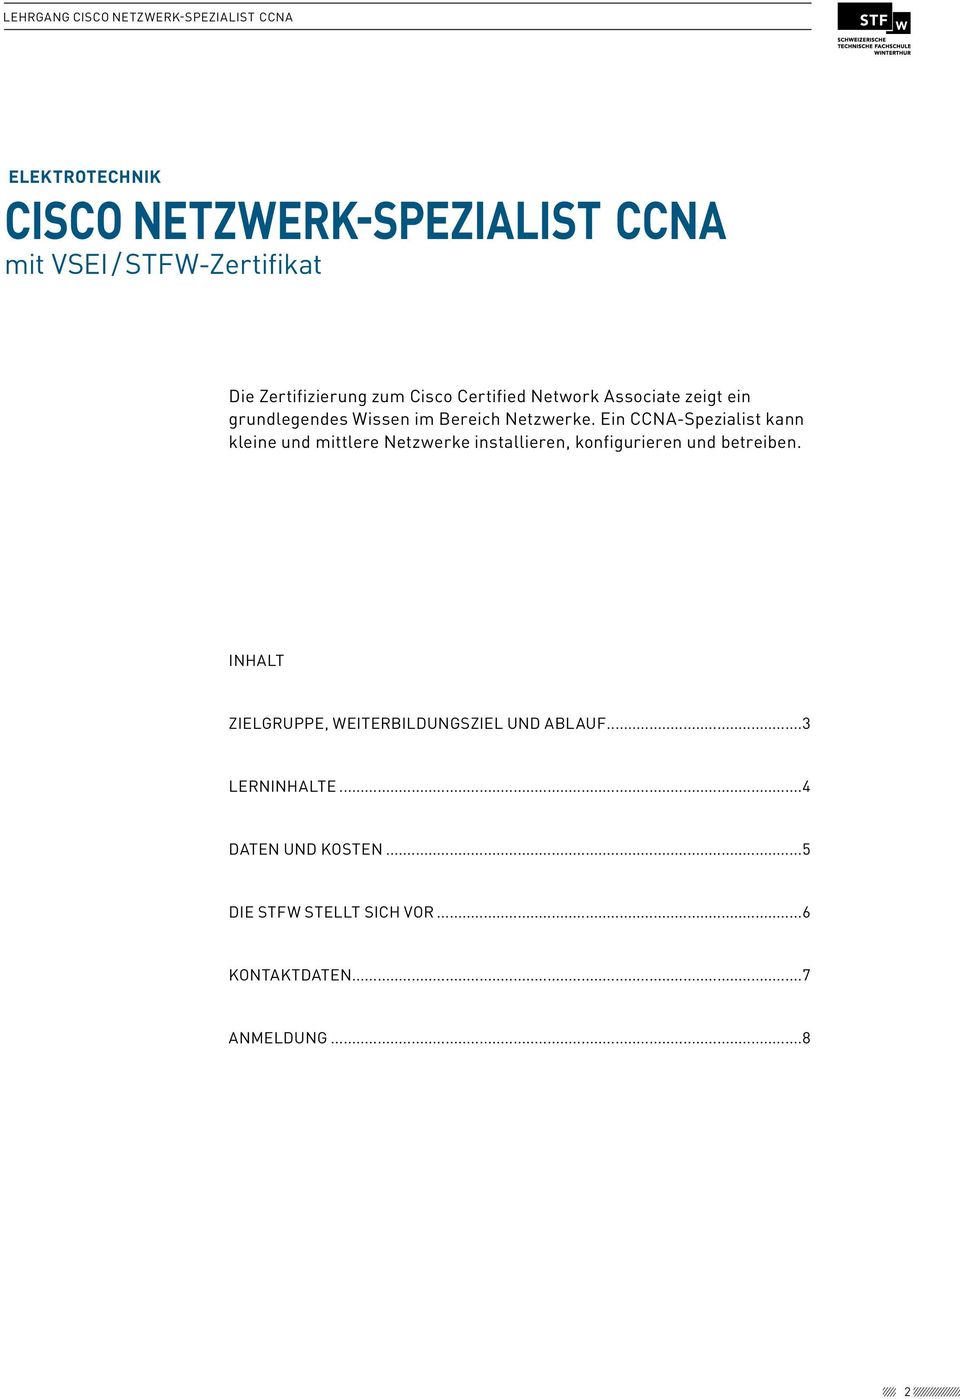 Ein CCNA-Spezialist kann kleine und mittlere Netzwerke installieren, konfigurieren und betreiben.